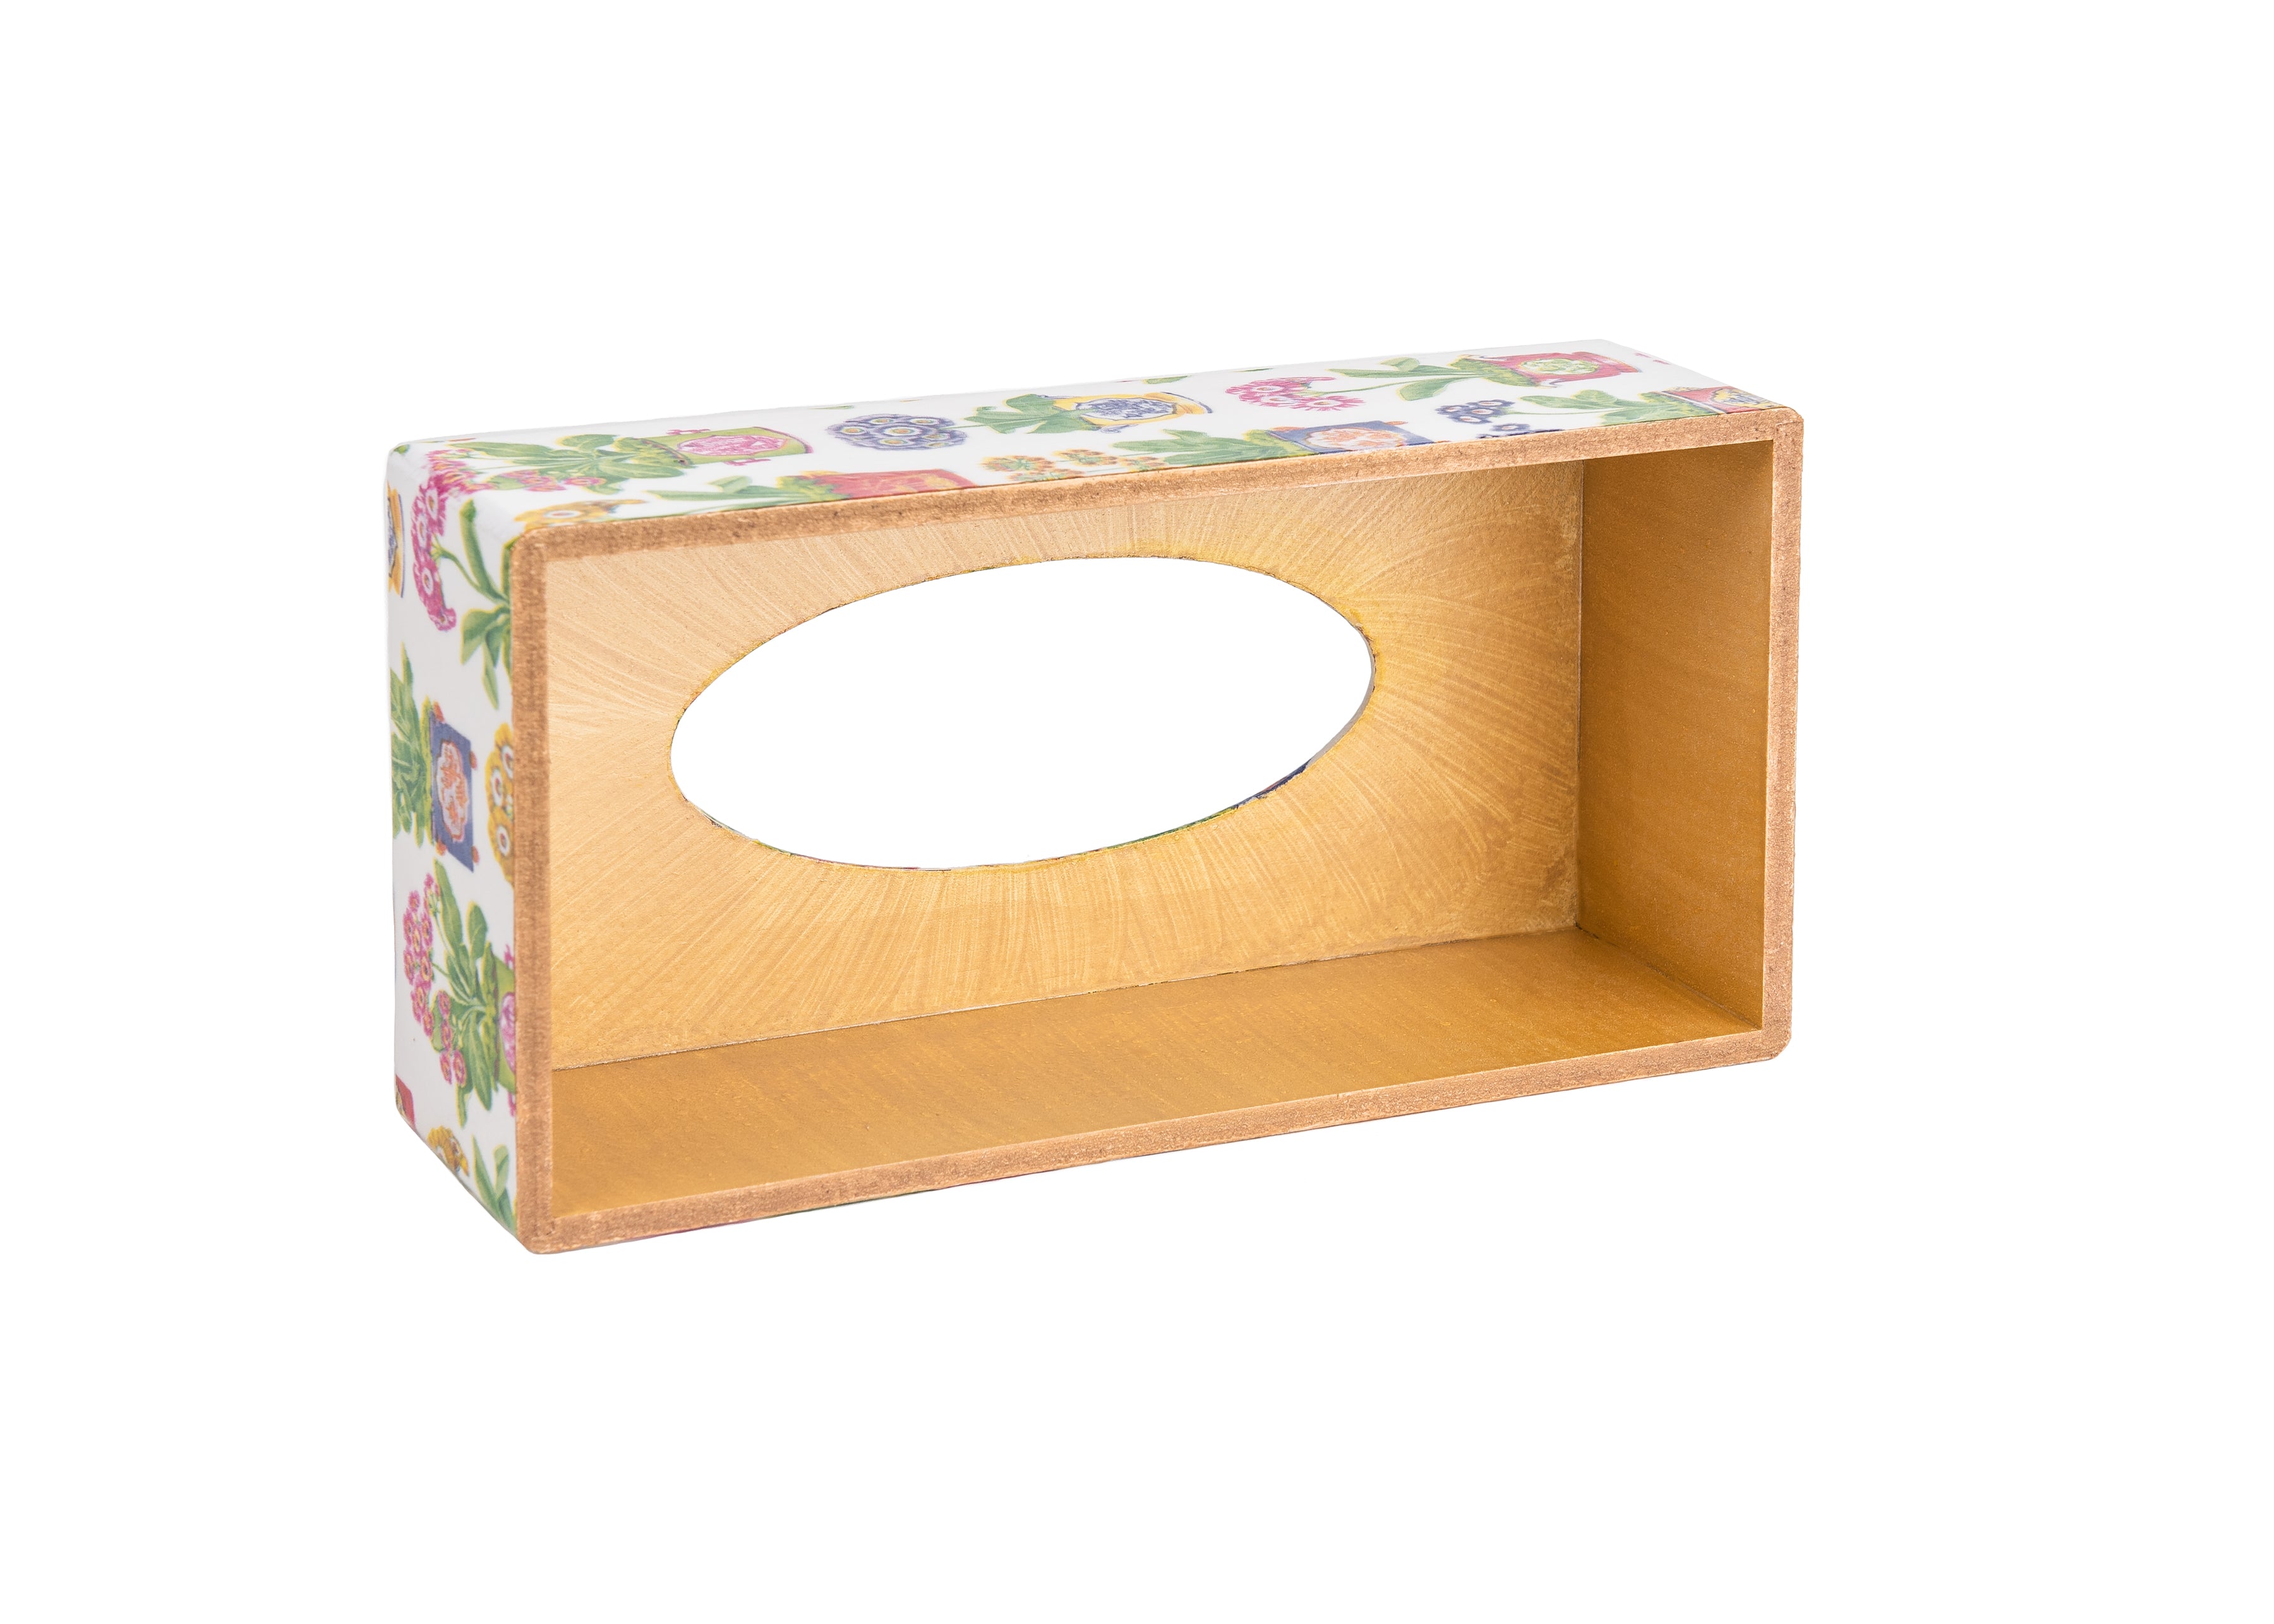 Floral Brushstrokes rectangular tissue box cover